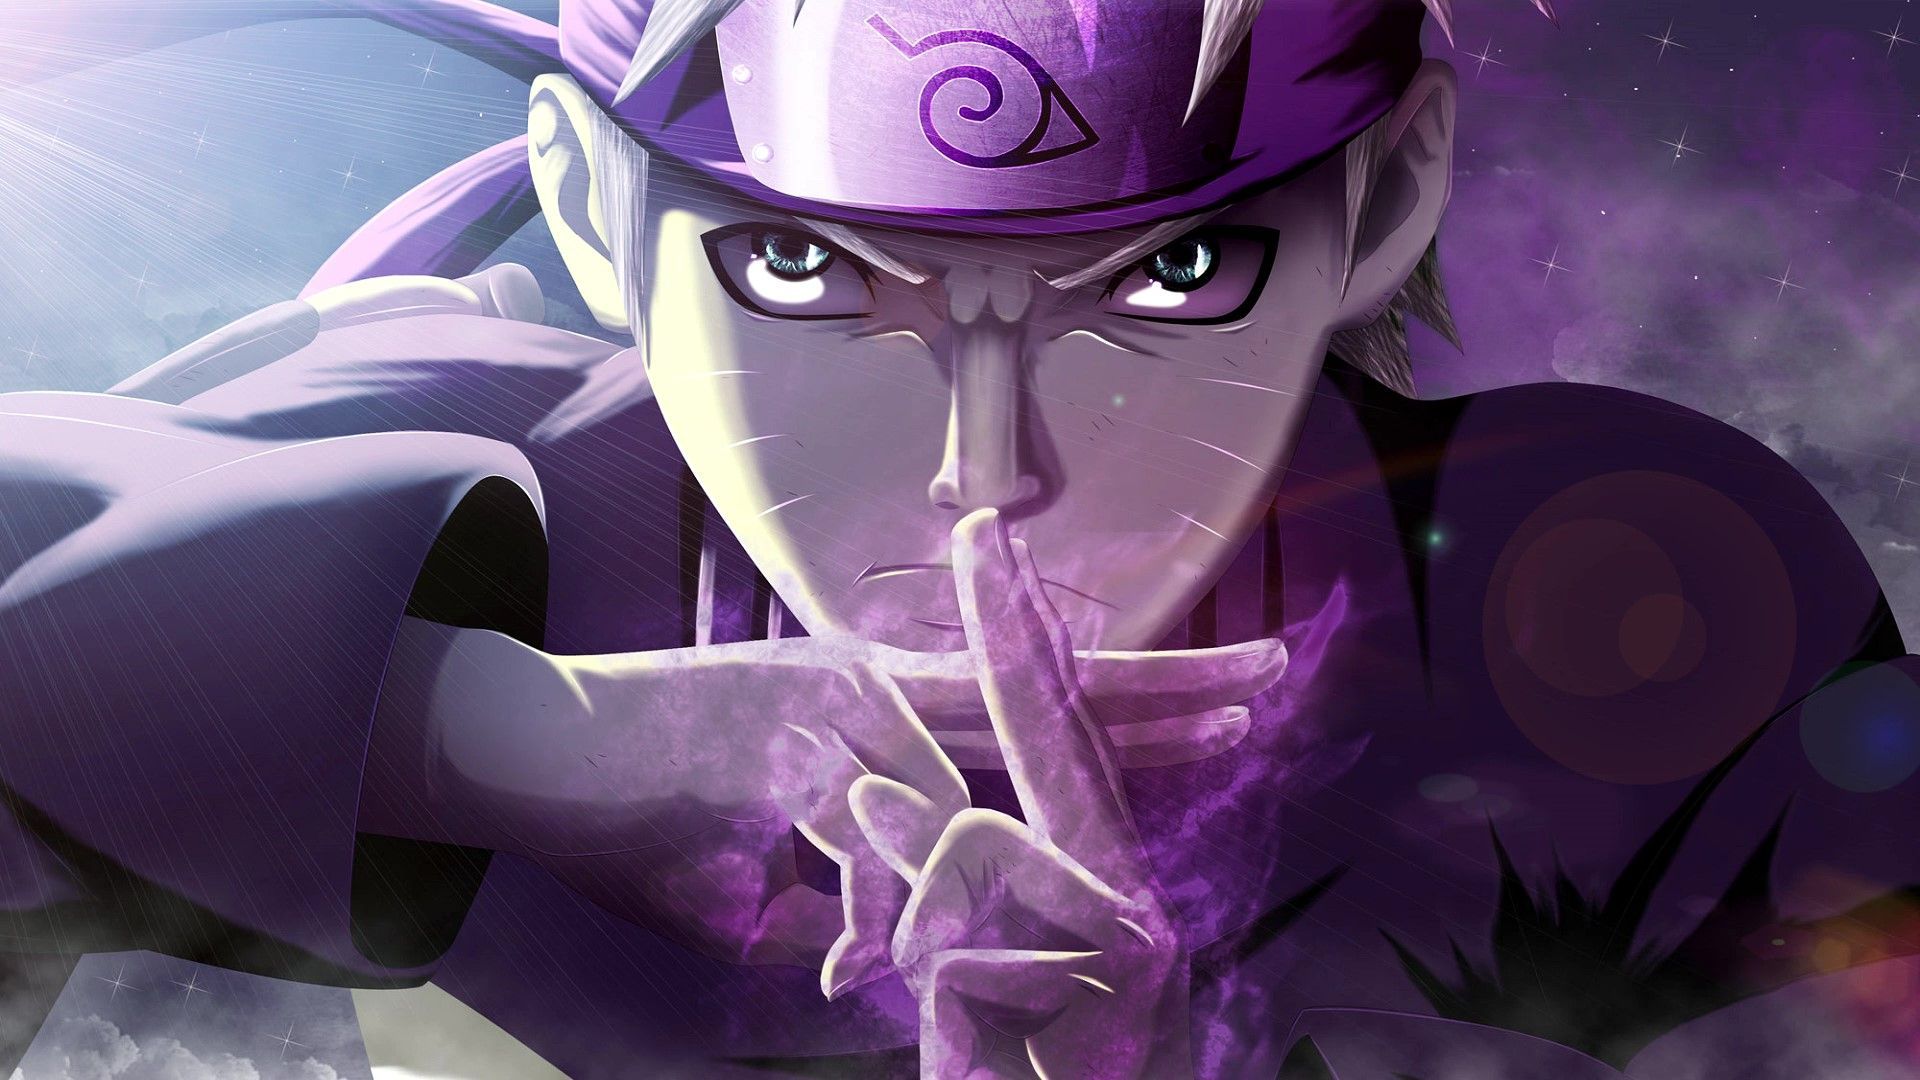 Purple Naruto Uzumaki. Cool anime wallpaper, Naruto wallpaper, Anime